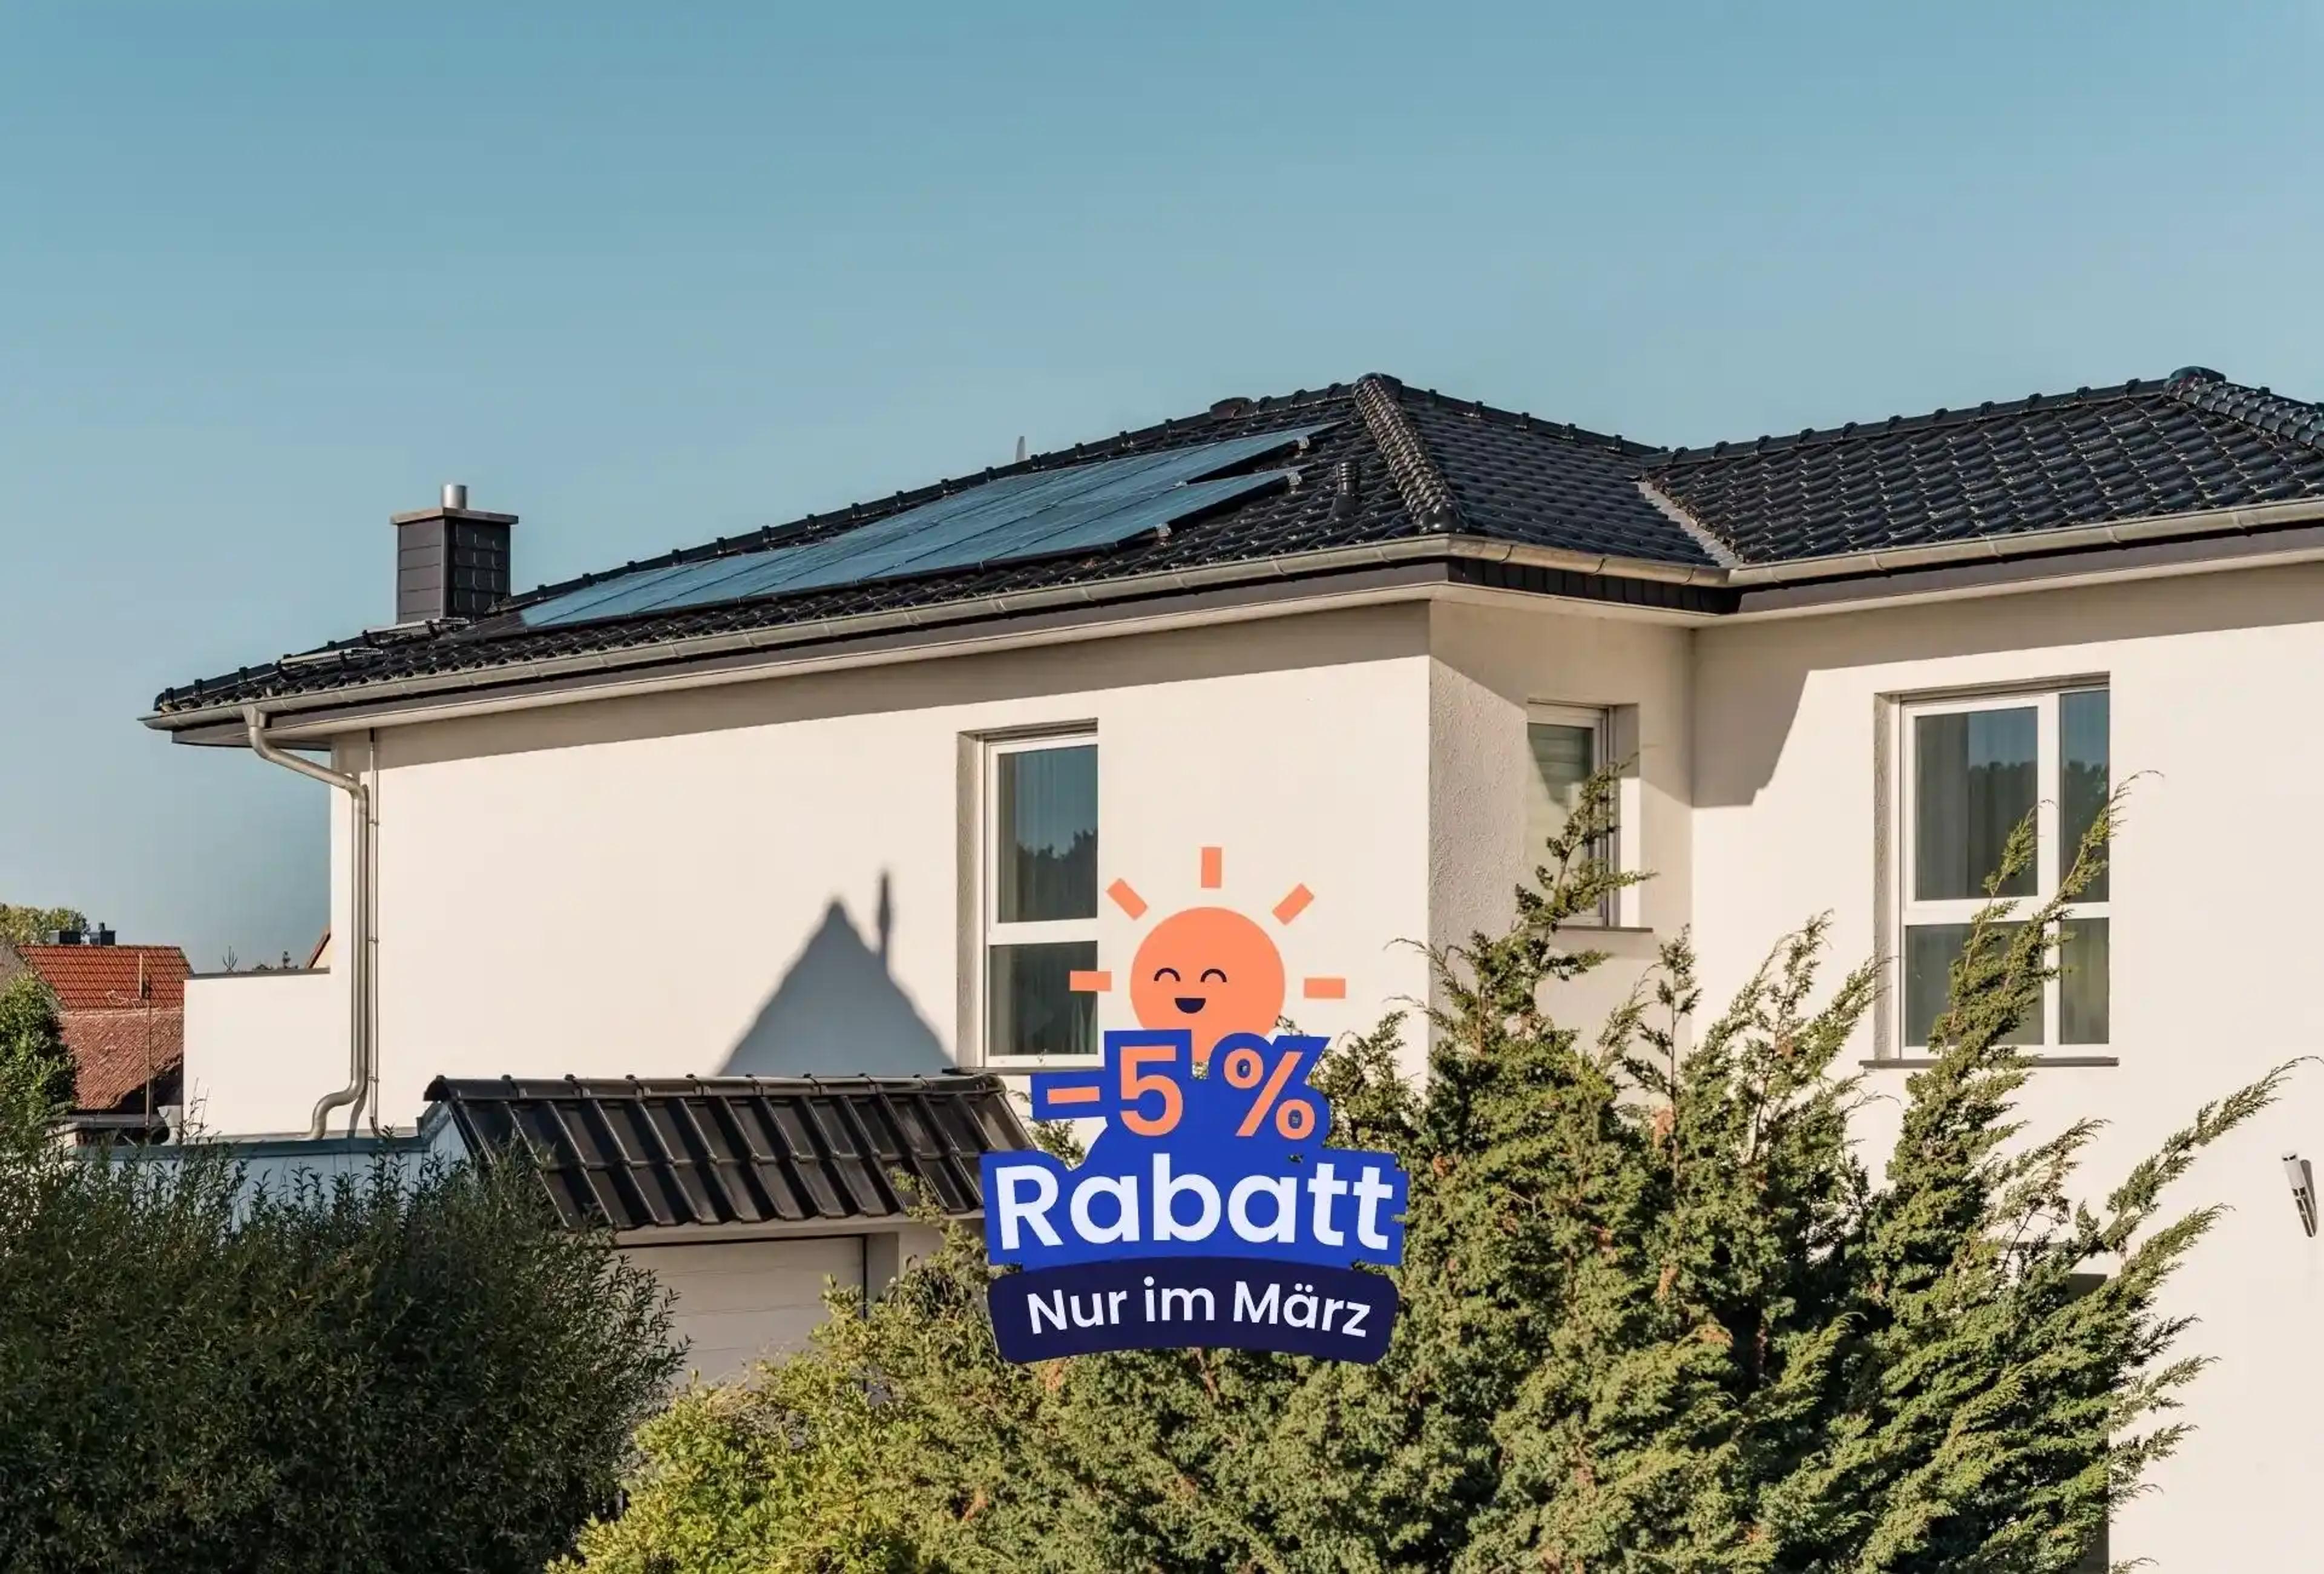 Haus mit Photovoltaikanlage auf dem Dach